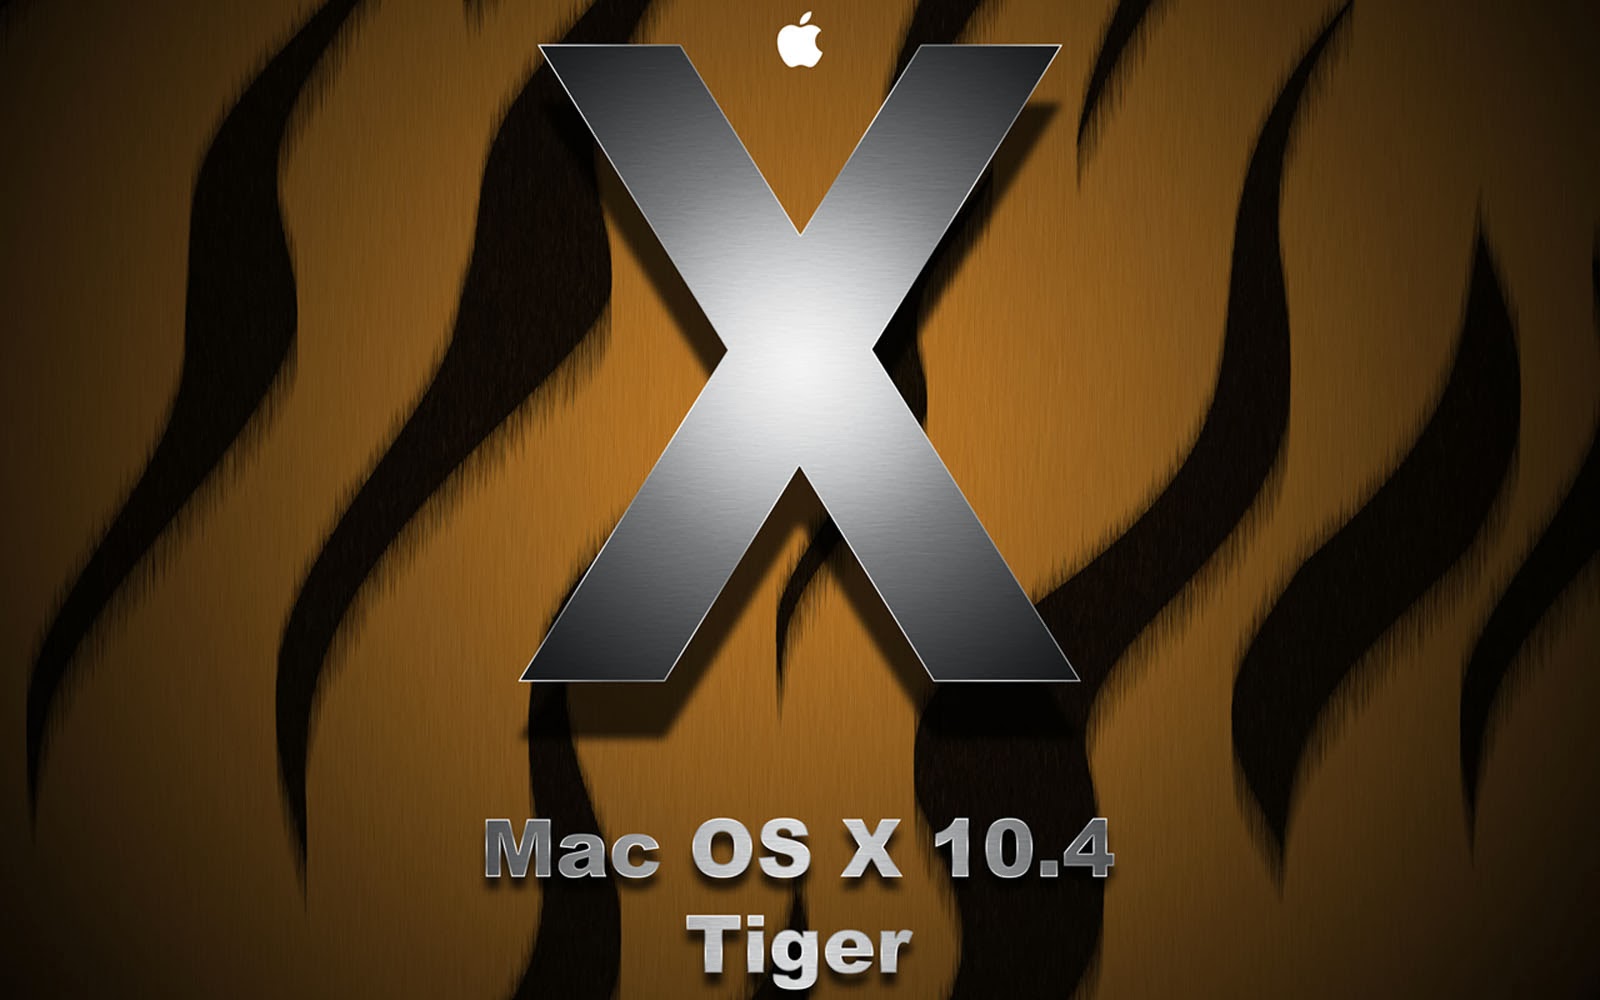 os x tiger wallpaper,font,logo,graphics,symbol